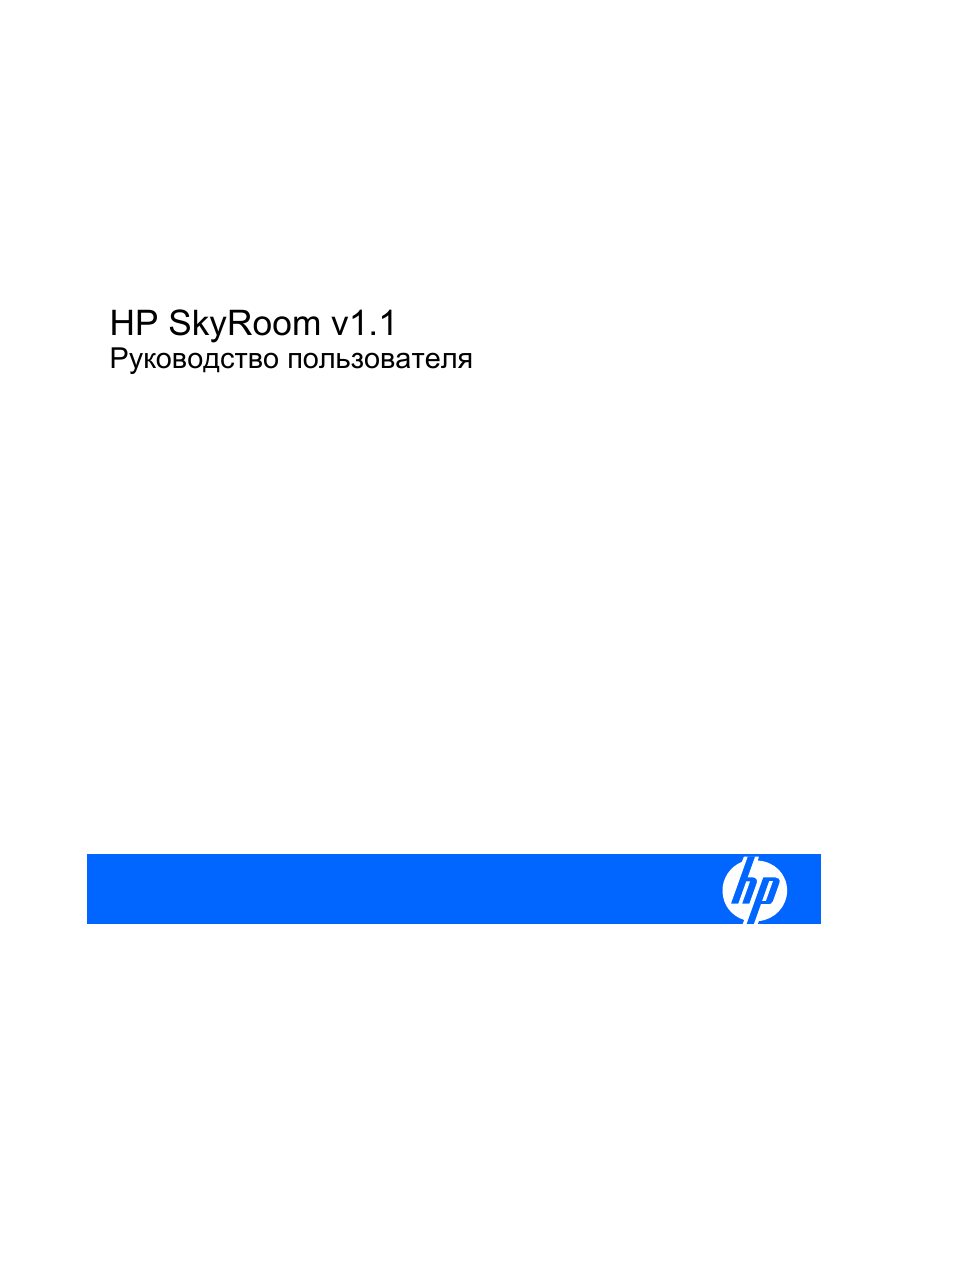 Инструкция по эксплуатации HP ПО v1 HP SkyRoom | 70 страниц